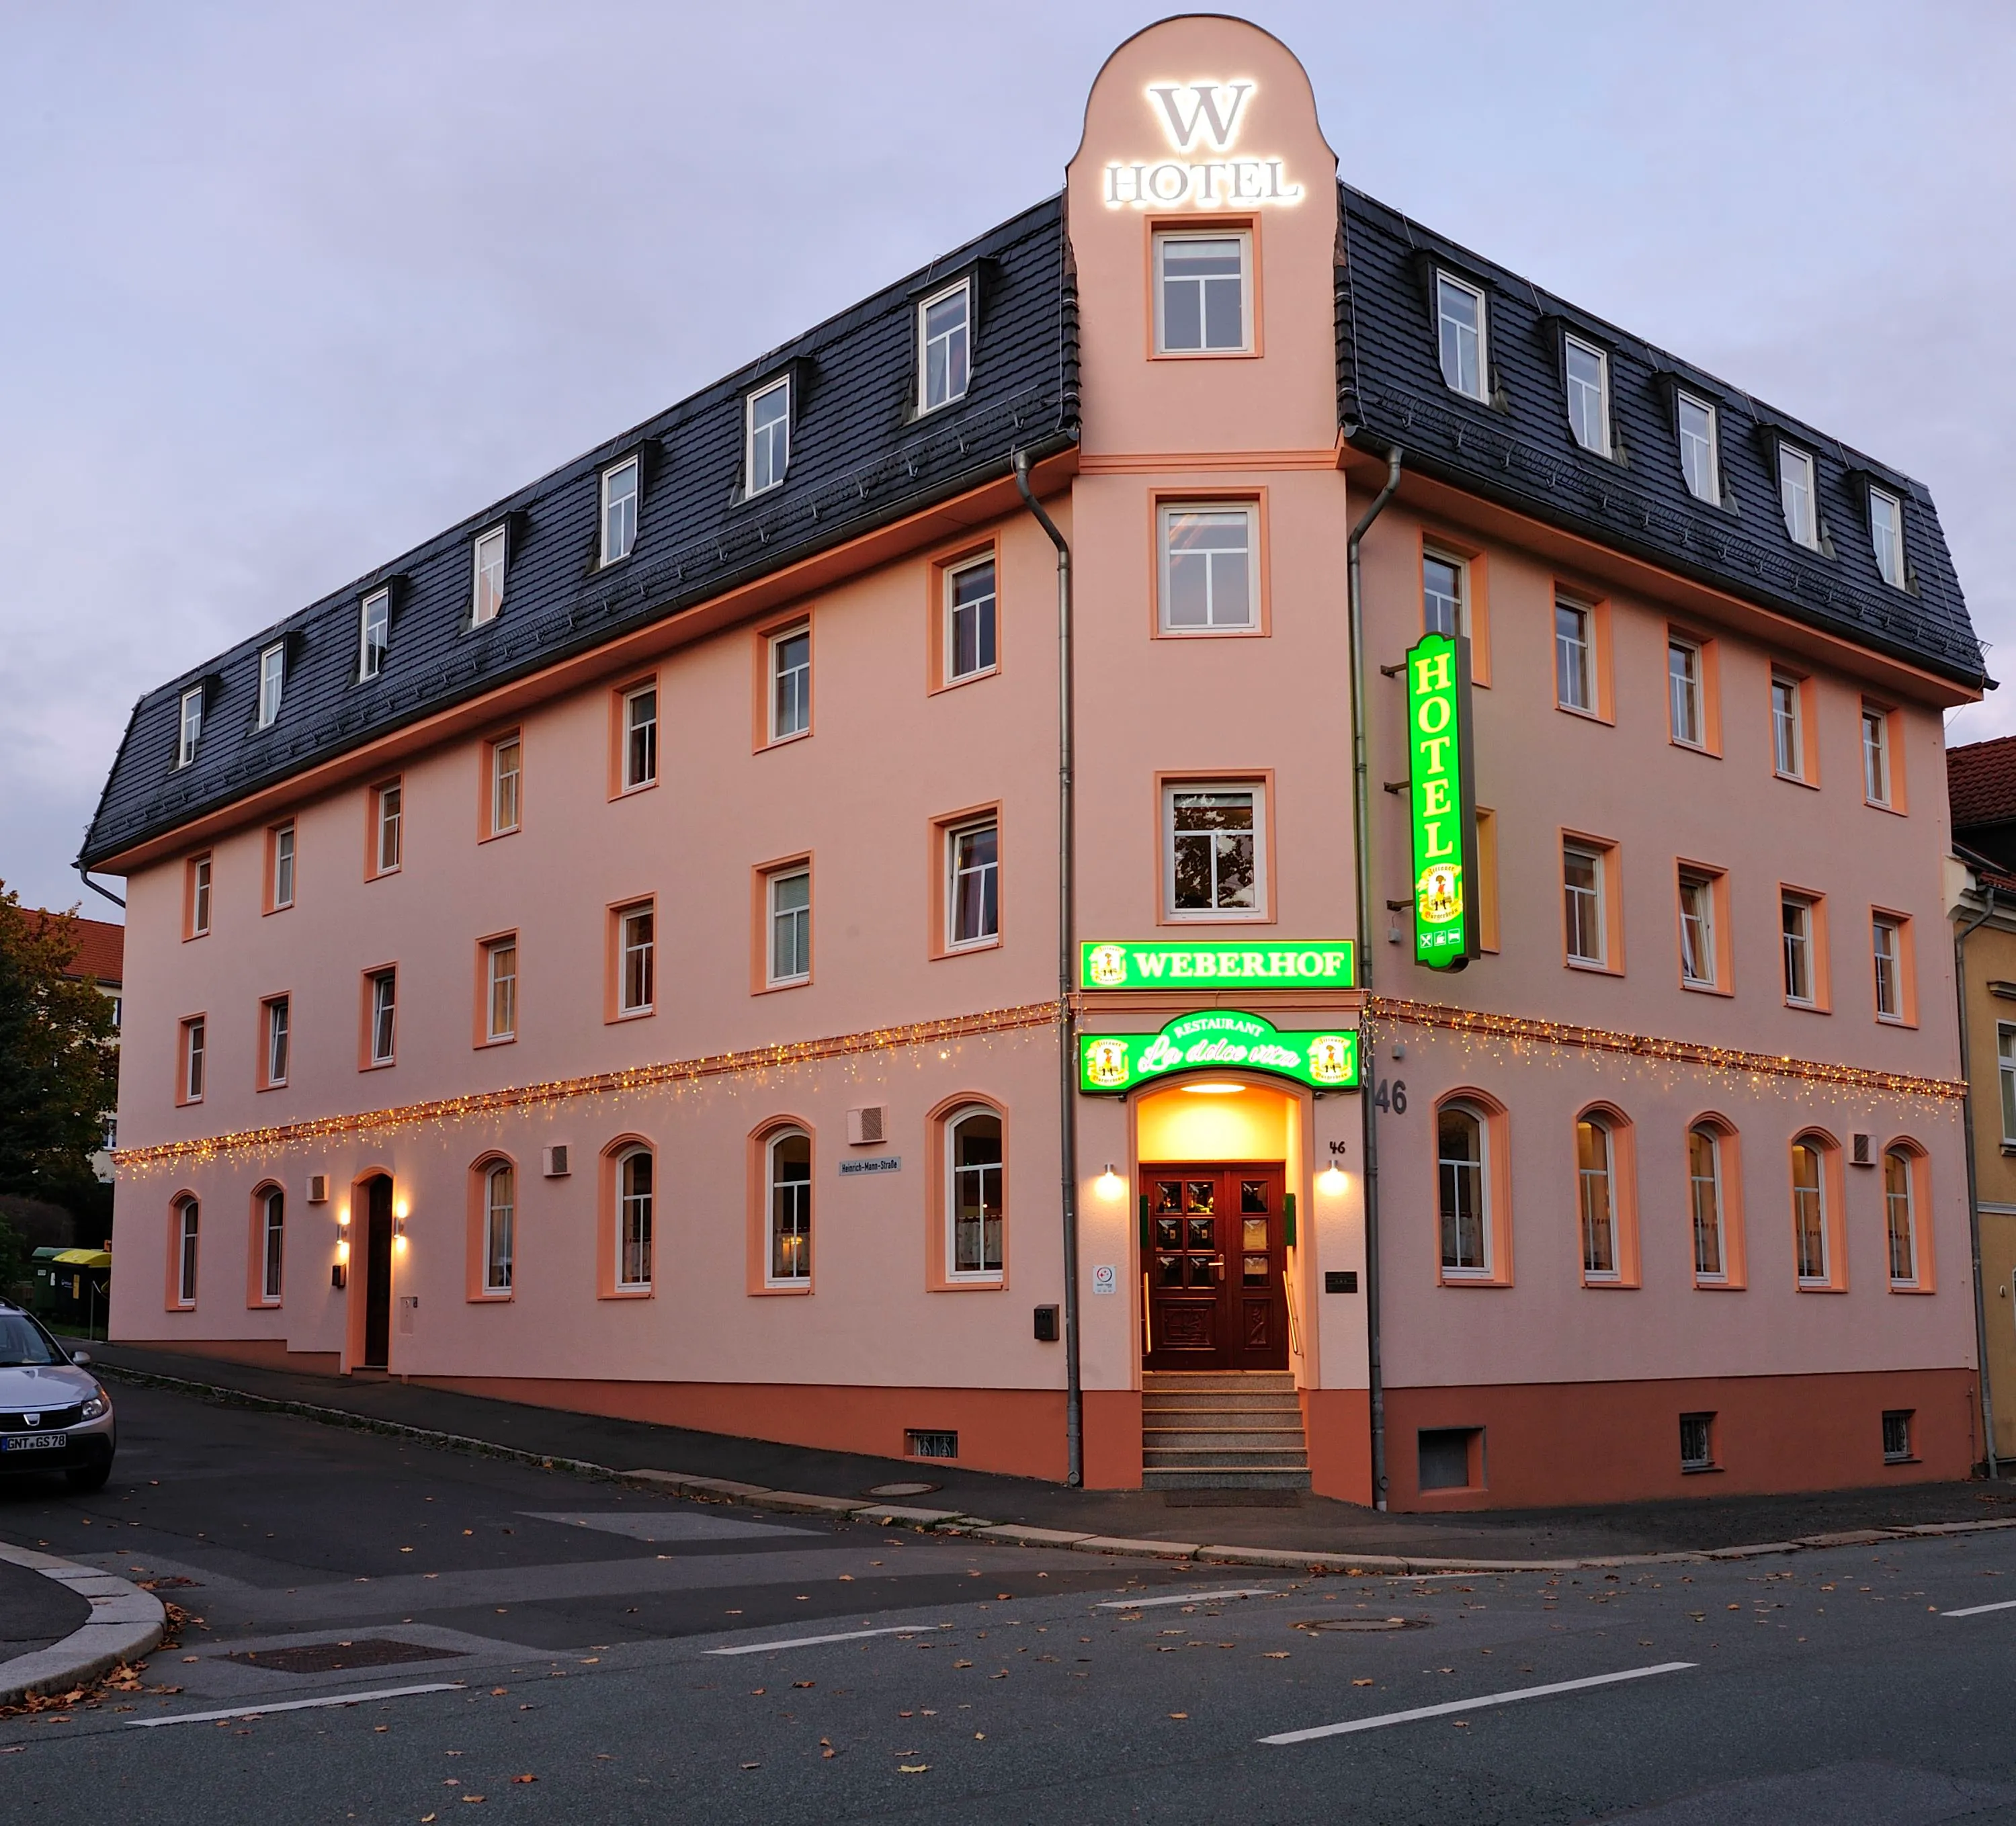 Building hotel Hotel Weberhof